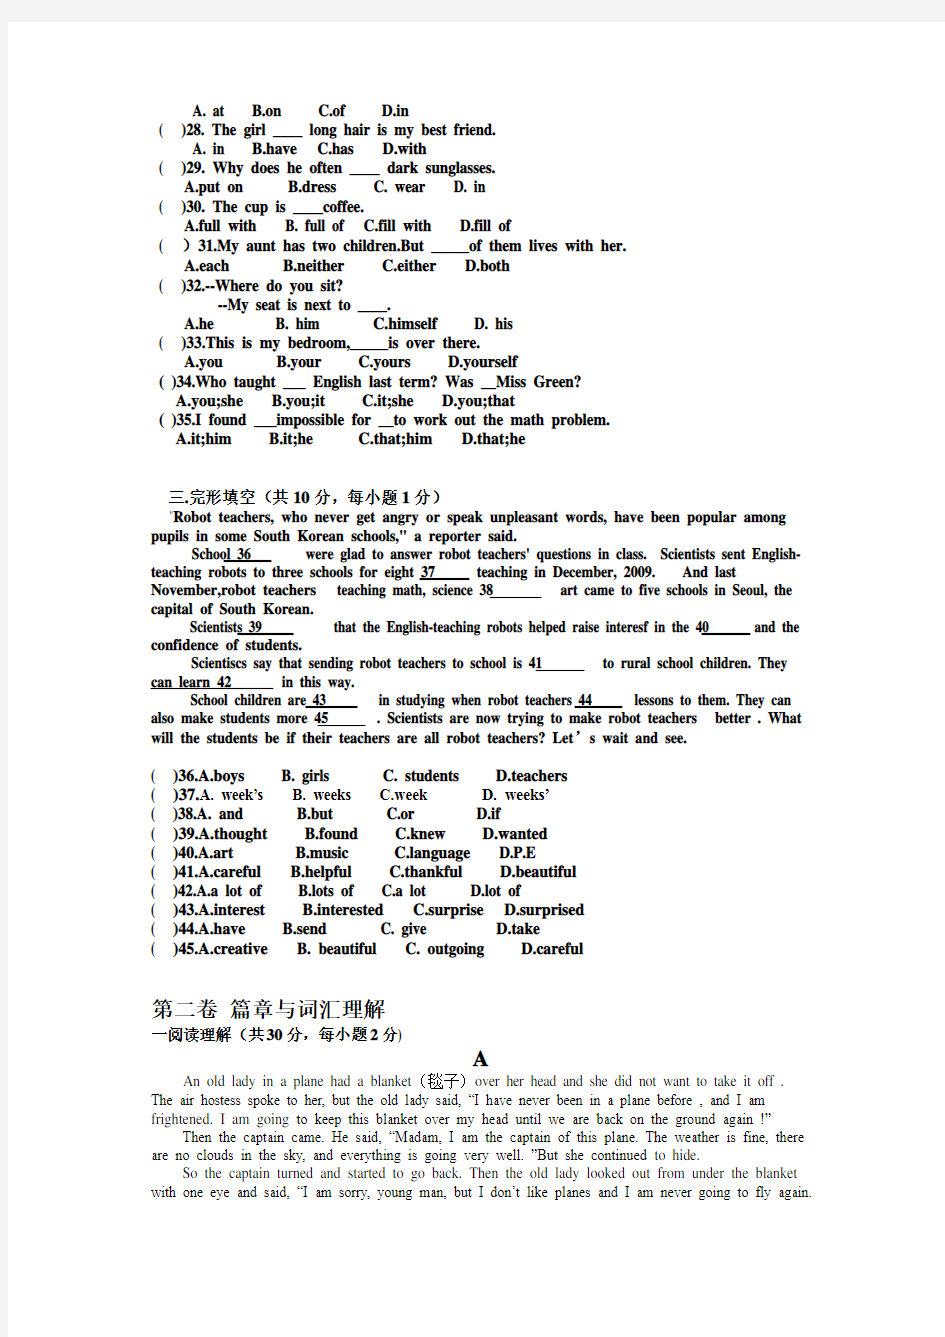 英语基础模块上册英语知识运用12单元考试题